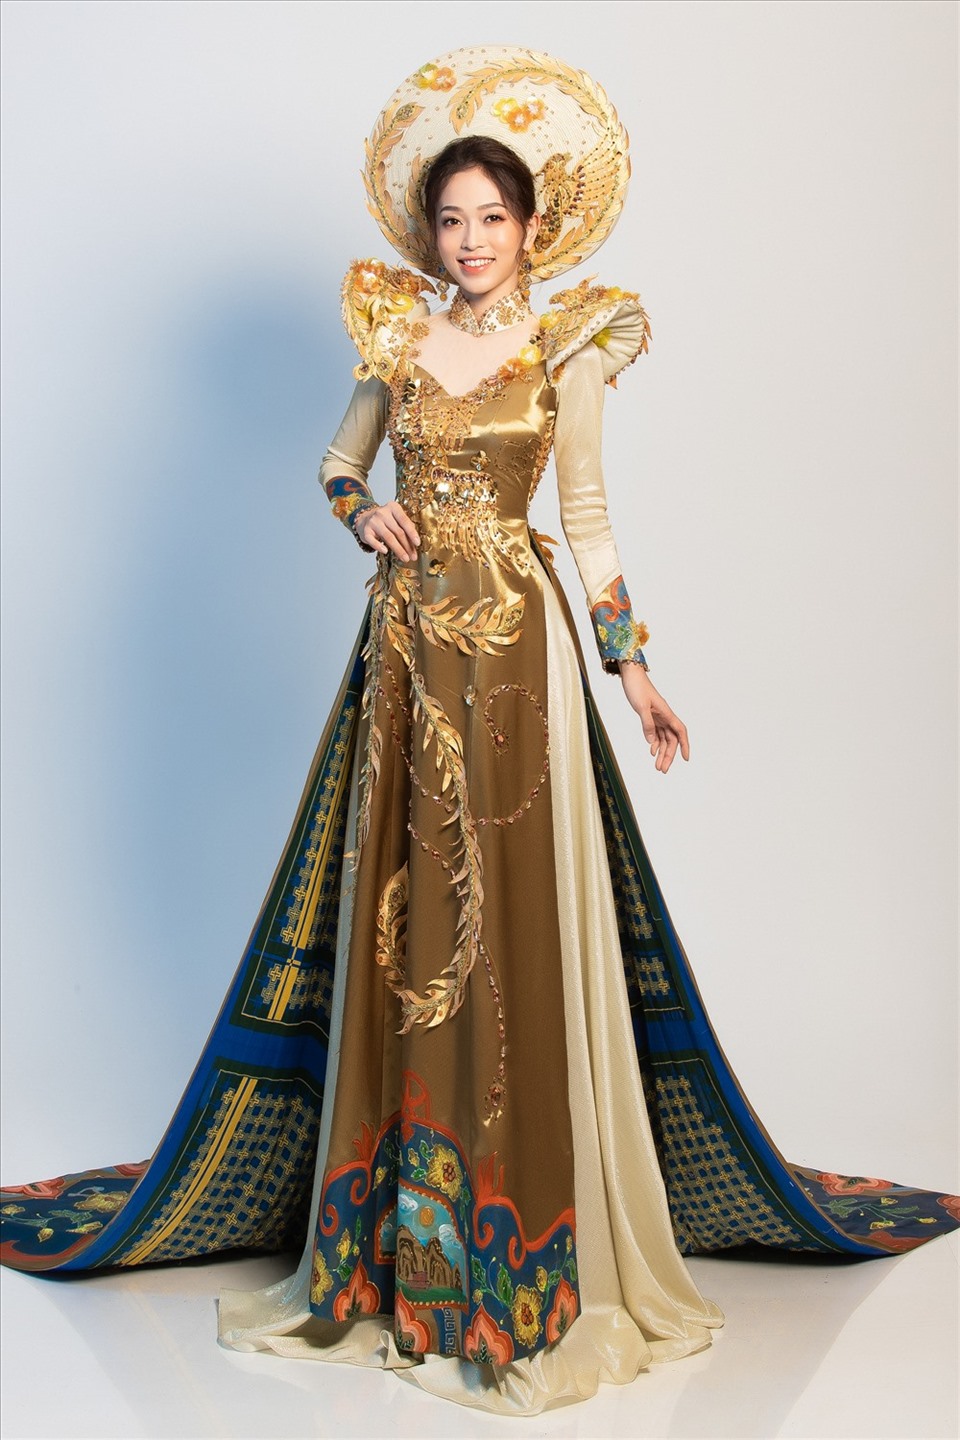 Trong cuộc thi, Phương Nga nhận được sự ủng hộ lớn từ phía người hâm mộ sắc đẹp ở Việt Nam và thế giới. Nhiều người cho rằng với bộ trang phục truyền thống được đầu tư công phu cùng màn trình diễn tự tin, việc Phương Nga đạt thứ hạng cao là kết quả xứng đáng cho những nỗ lực của cô. Ảnh: Sen Vàng.